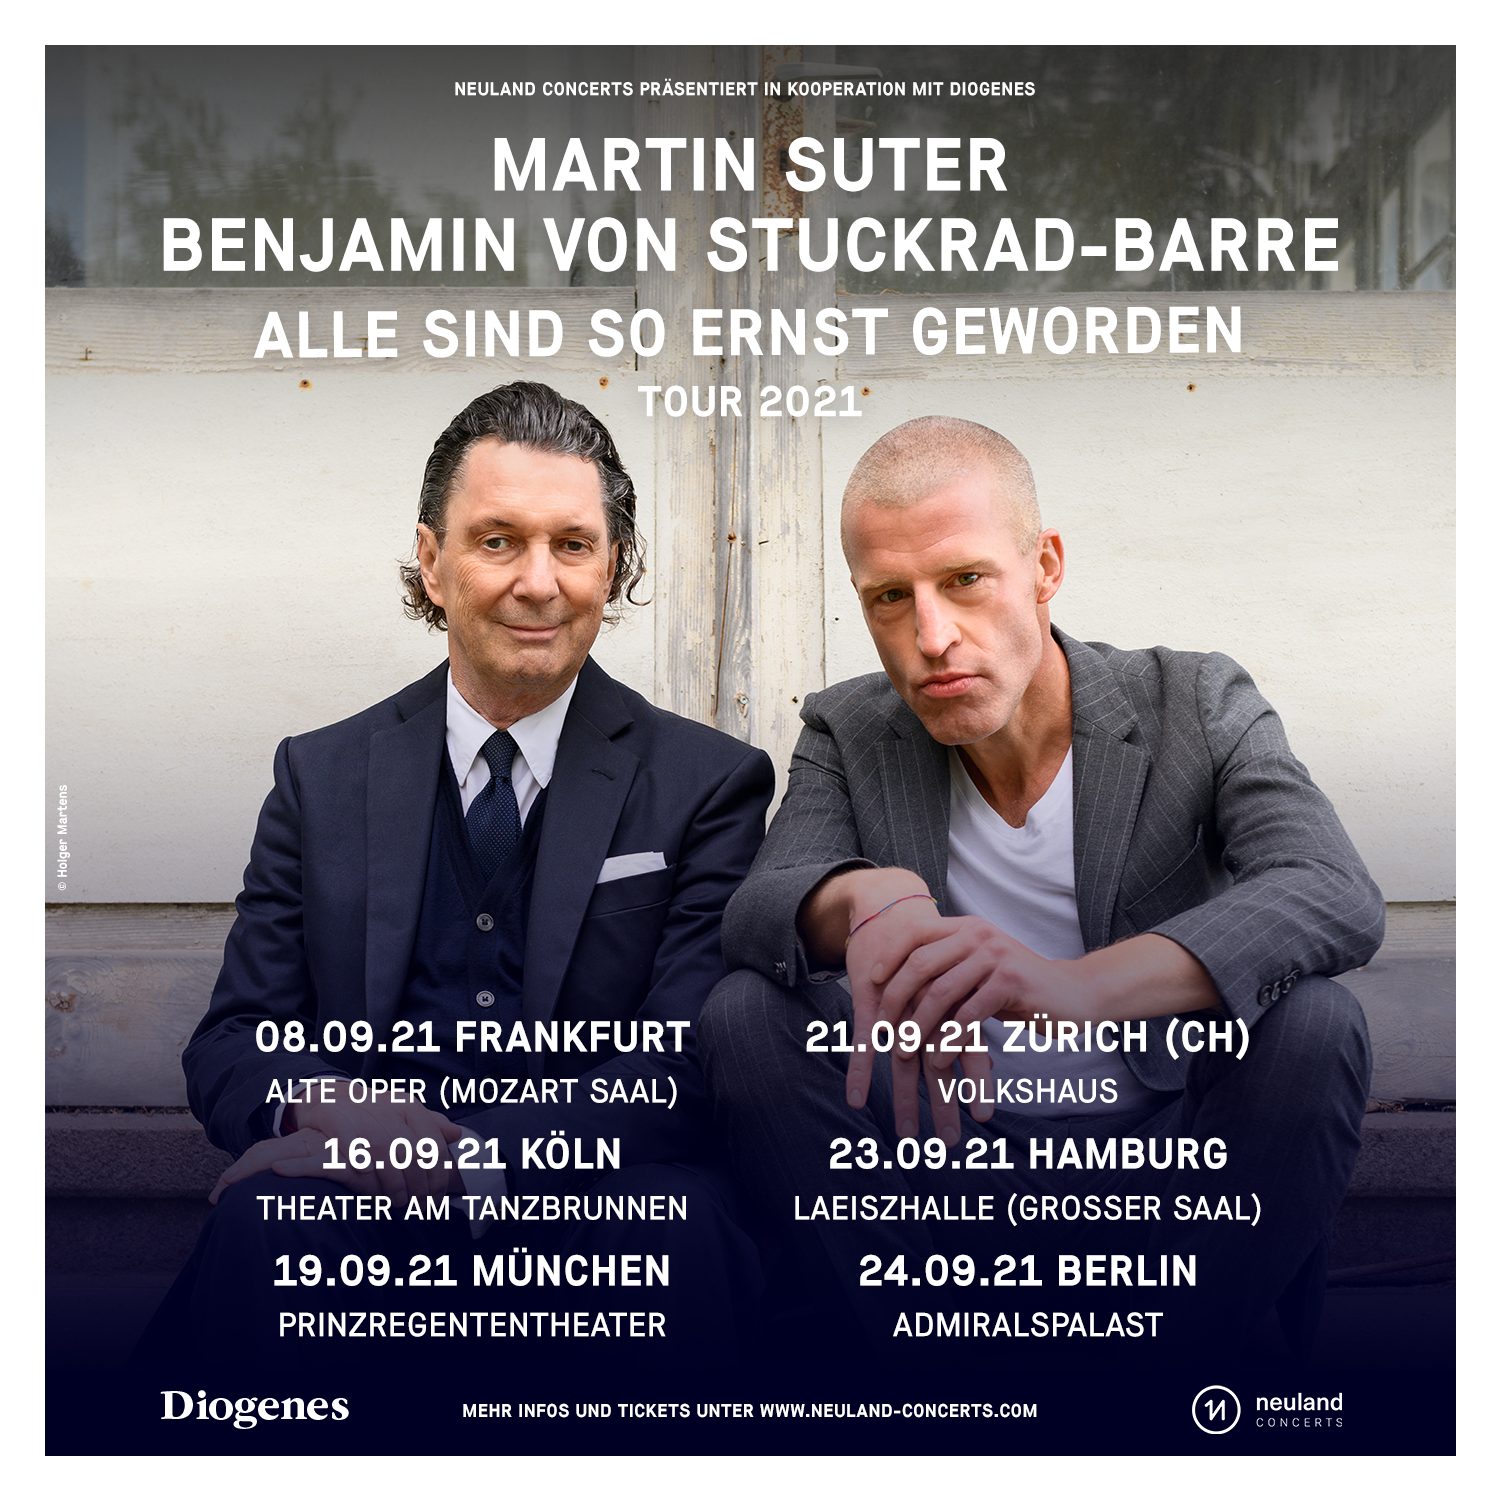 Martin Suter und Benjamin von Stuckrad-Barre gehen auf Tour